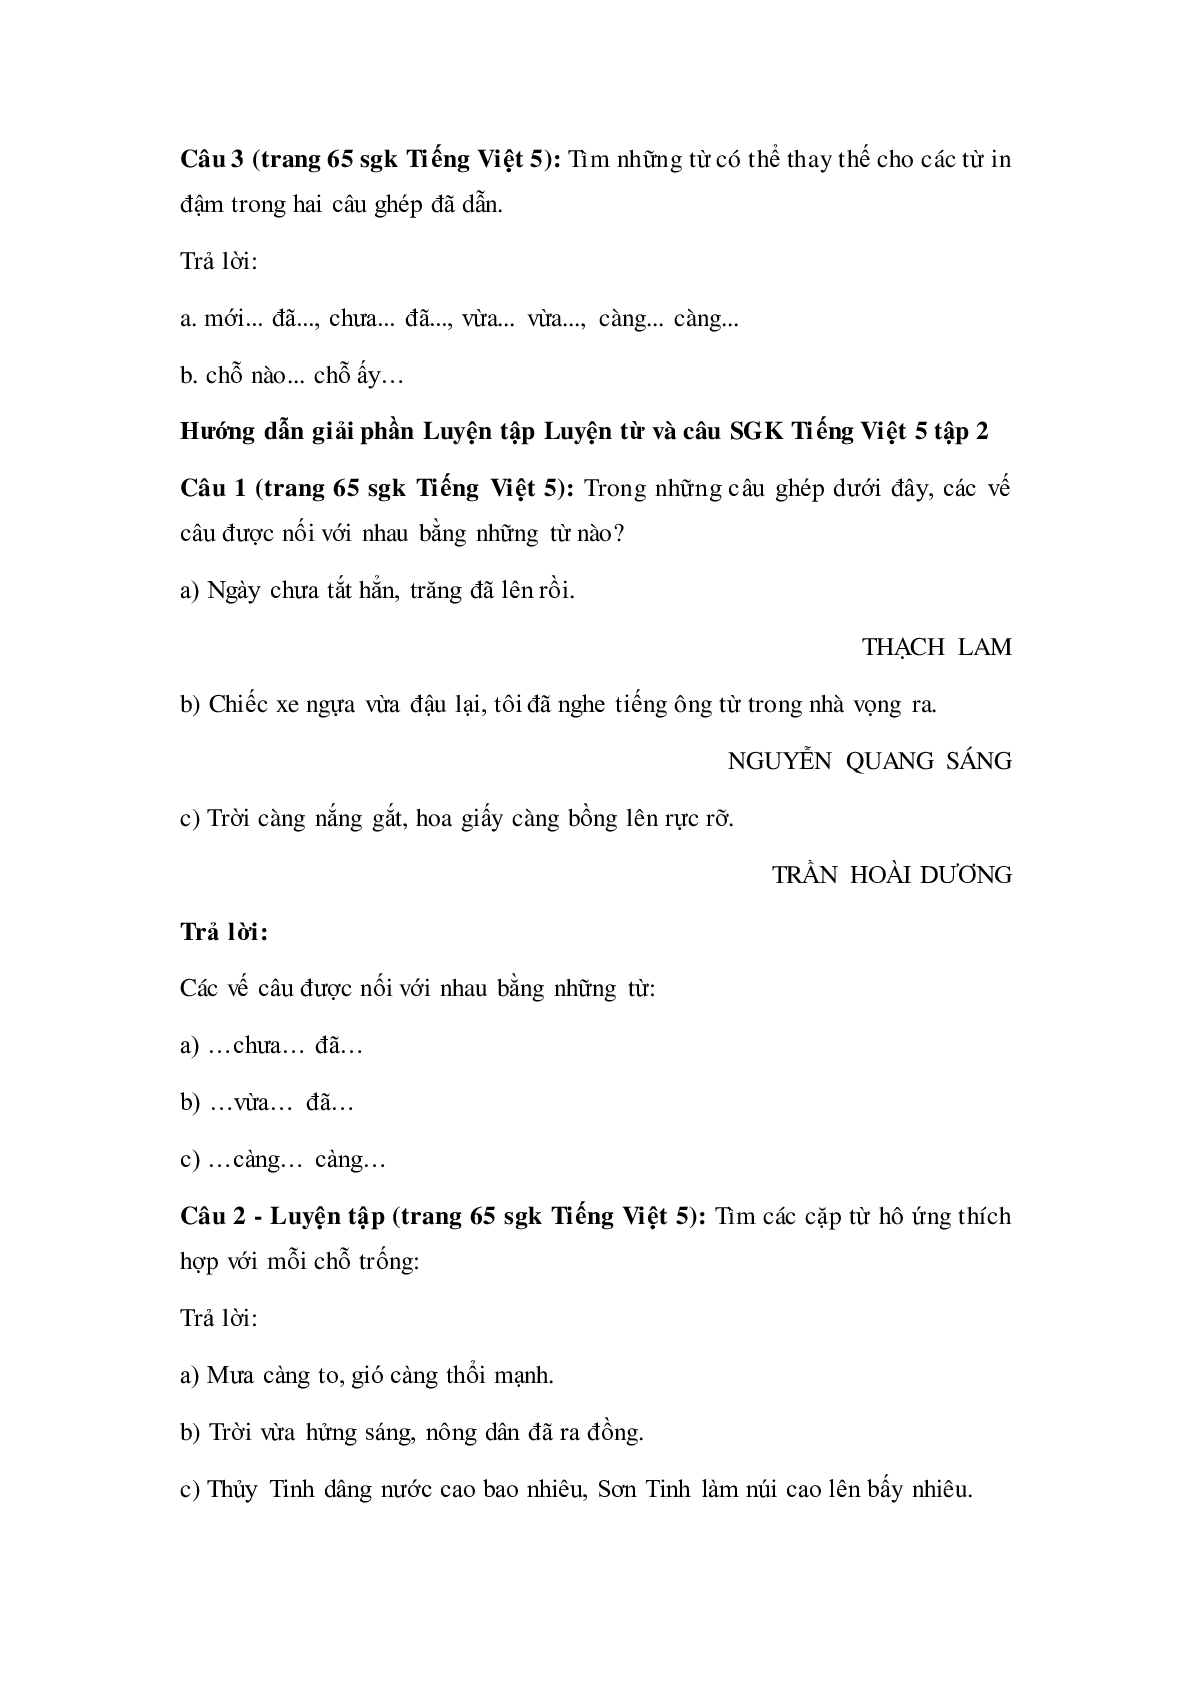 Soạn Tiếng Việt lớp 5: Luyện từ và câu: Nối các vế câu ghép bằng cặp từ hô ứng mới nhất (trang 2)